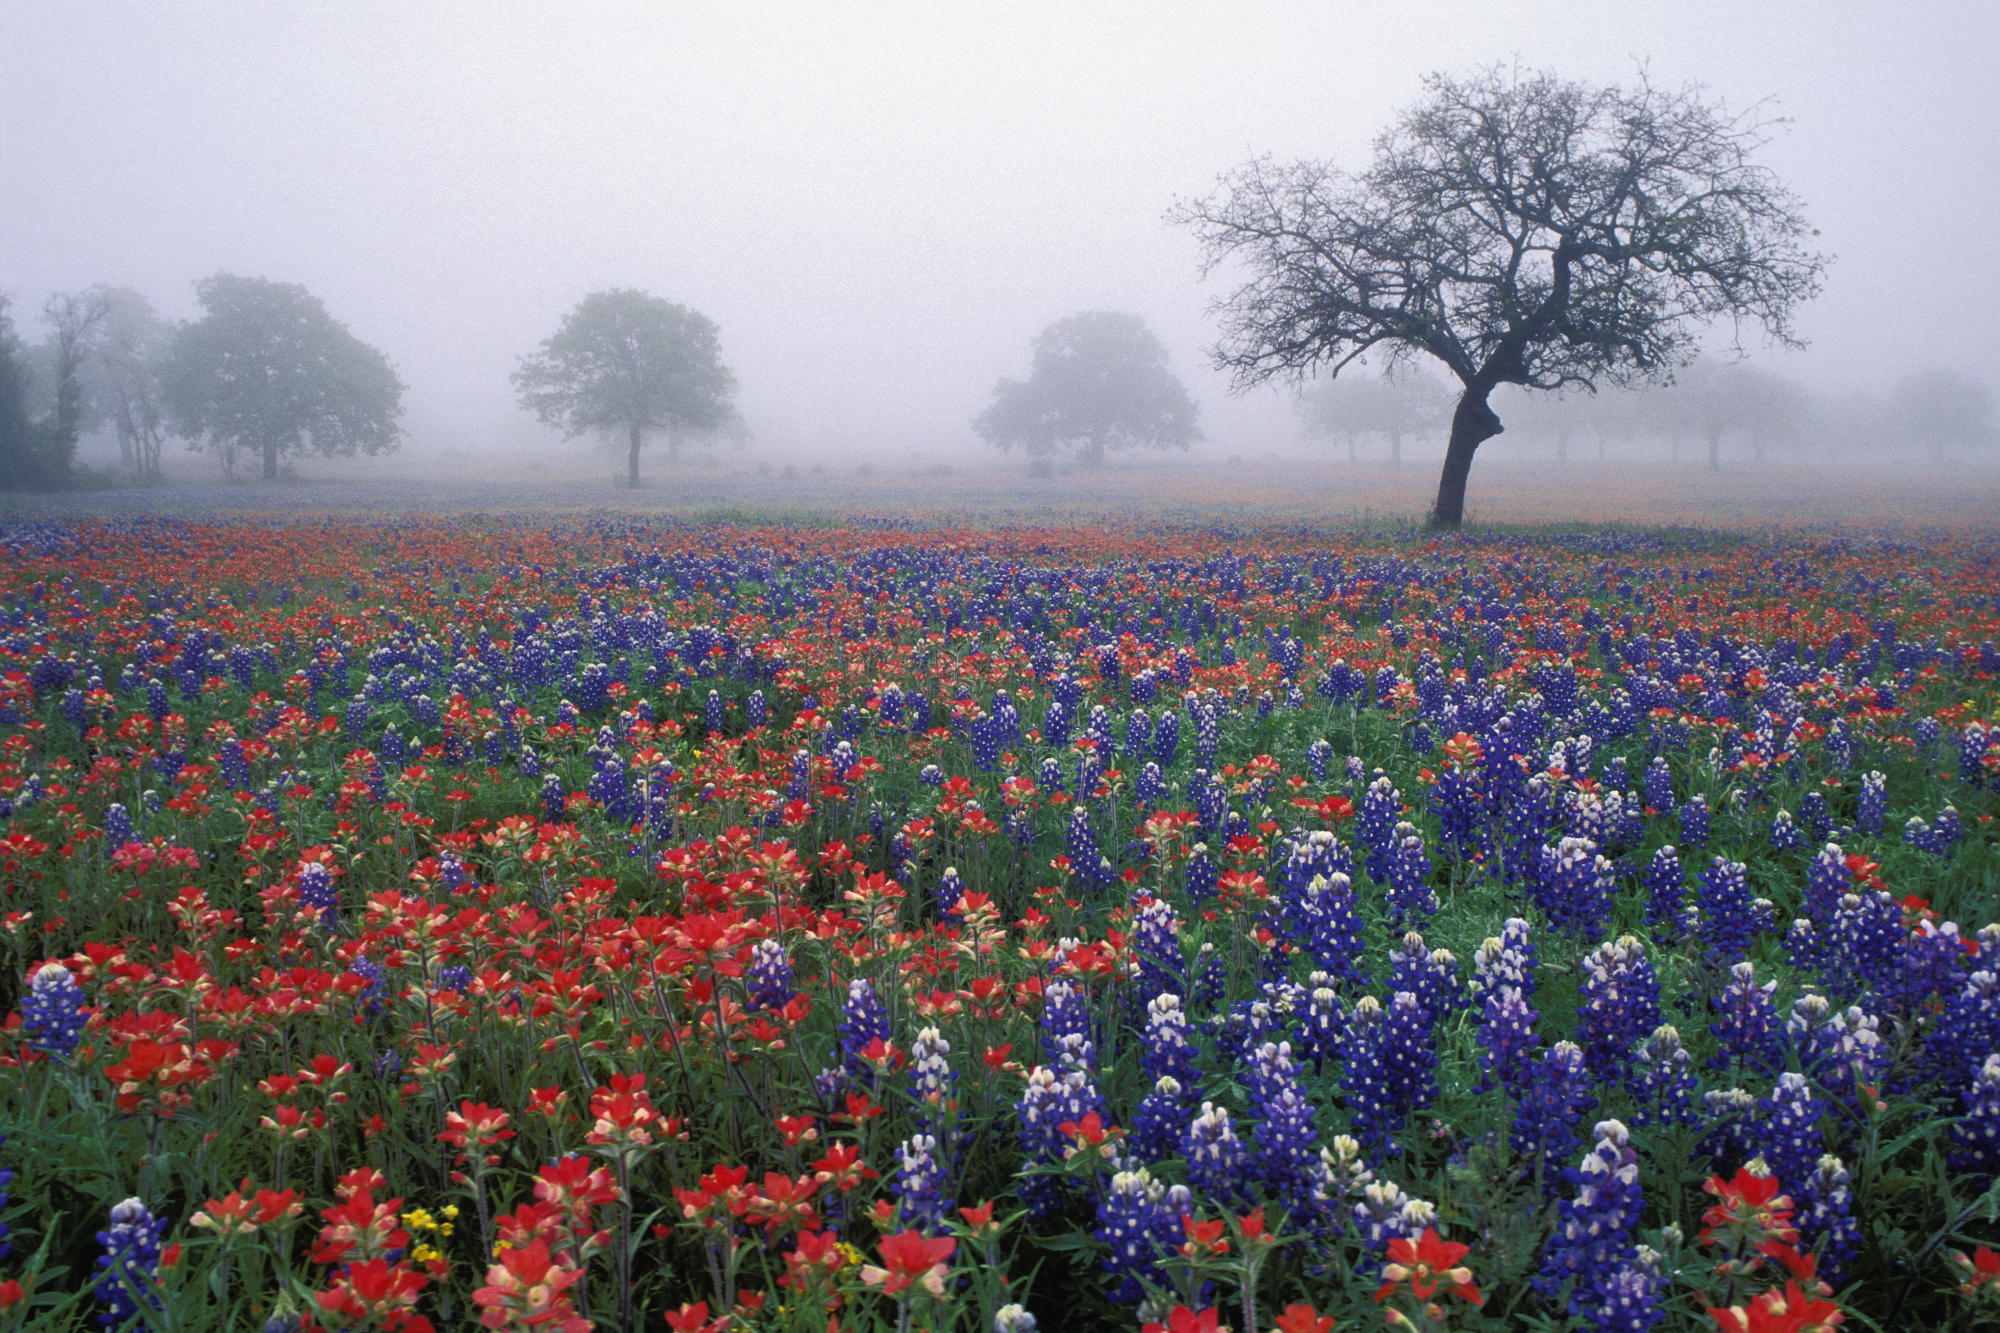 trees, flowers, fields, mist, oak, red flowers, blue flowers, Bluebonnet - desktop wallpaper